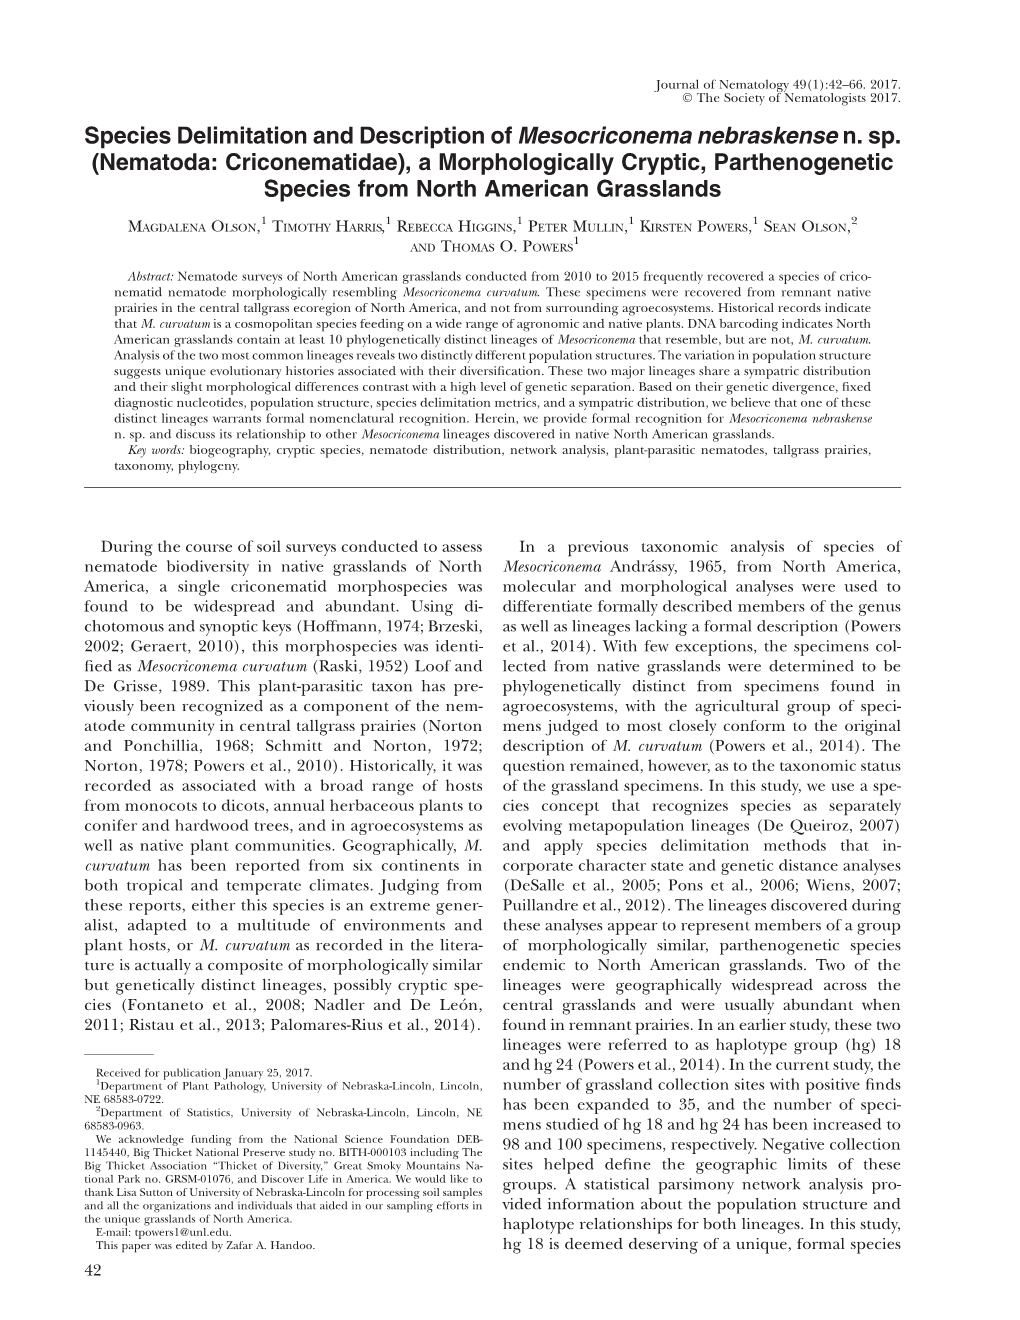 Species Delimitation and Description of Mesocriconema Nebraskense N